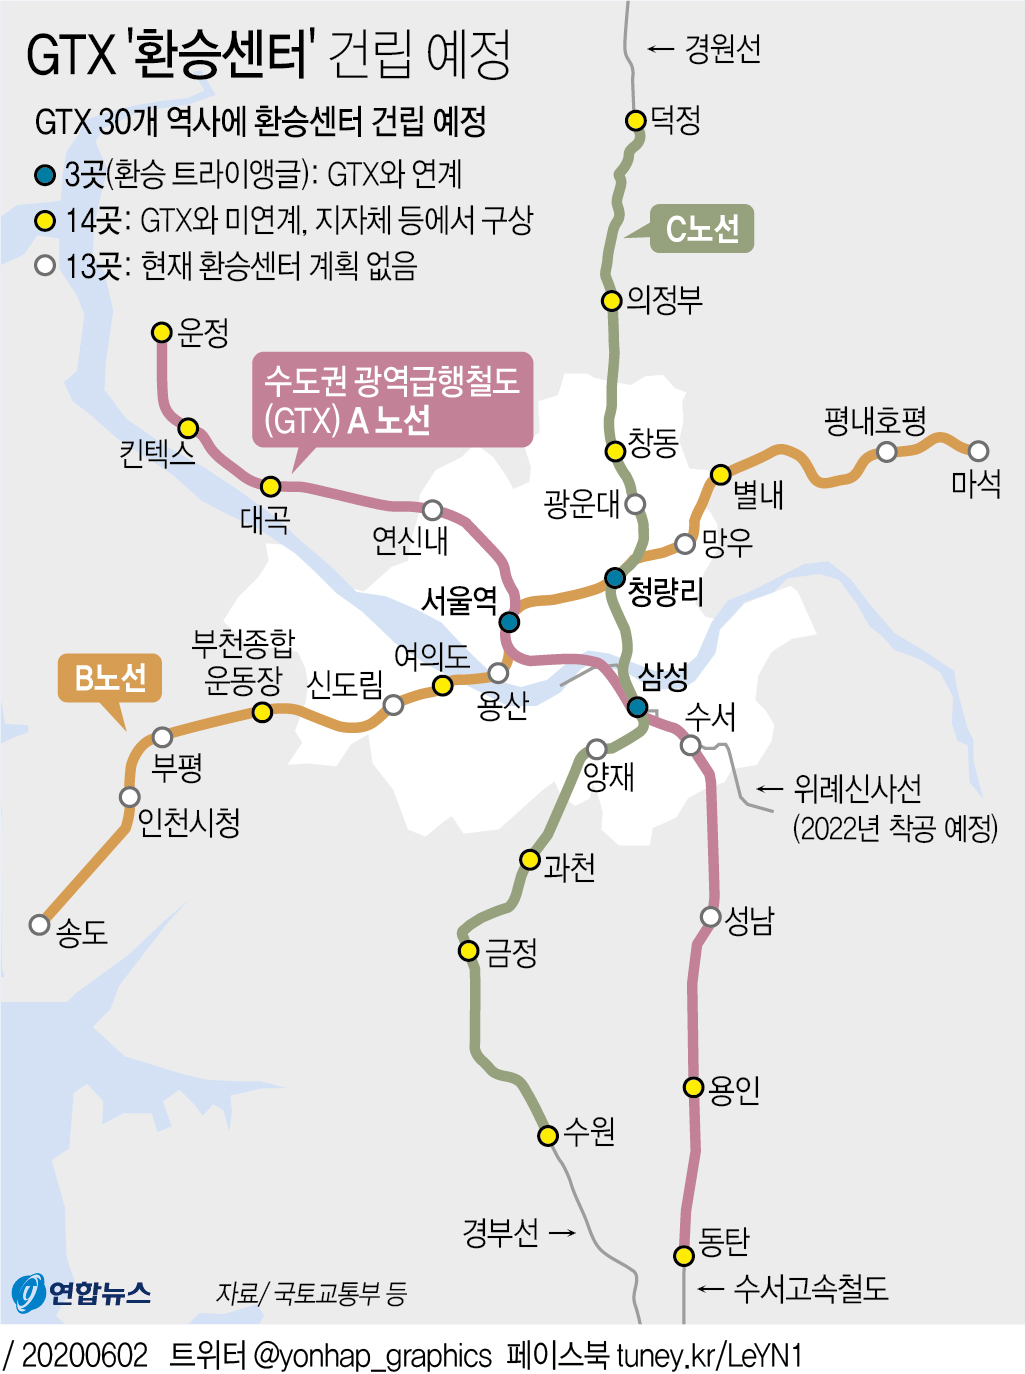 [그래픽] GTX '환승센터' 건립 예정